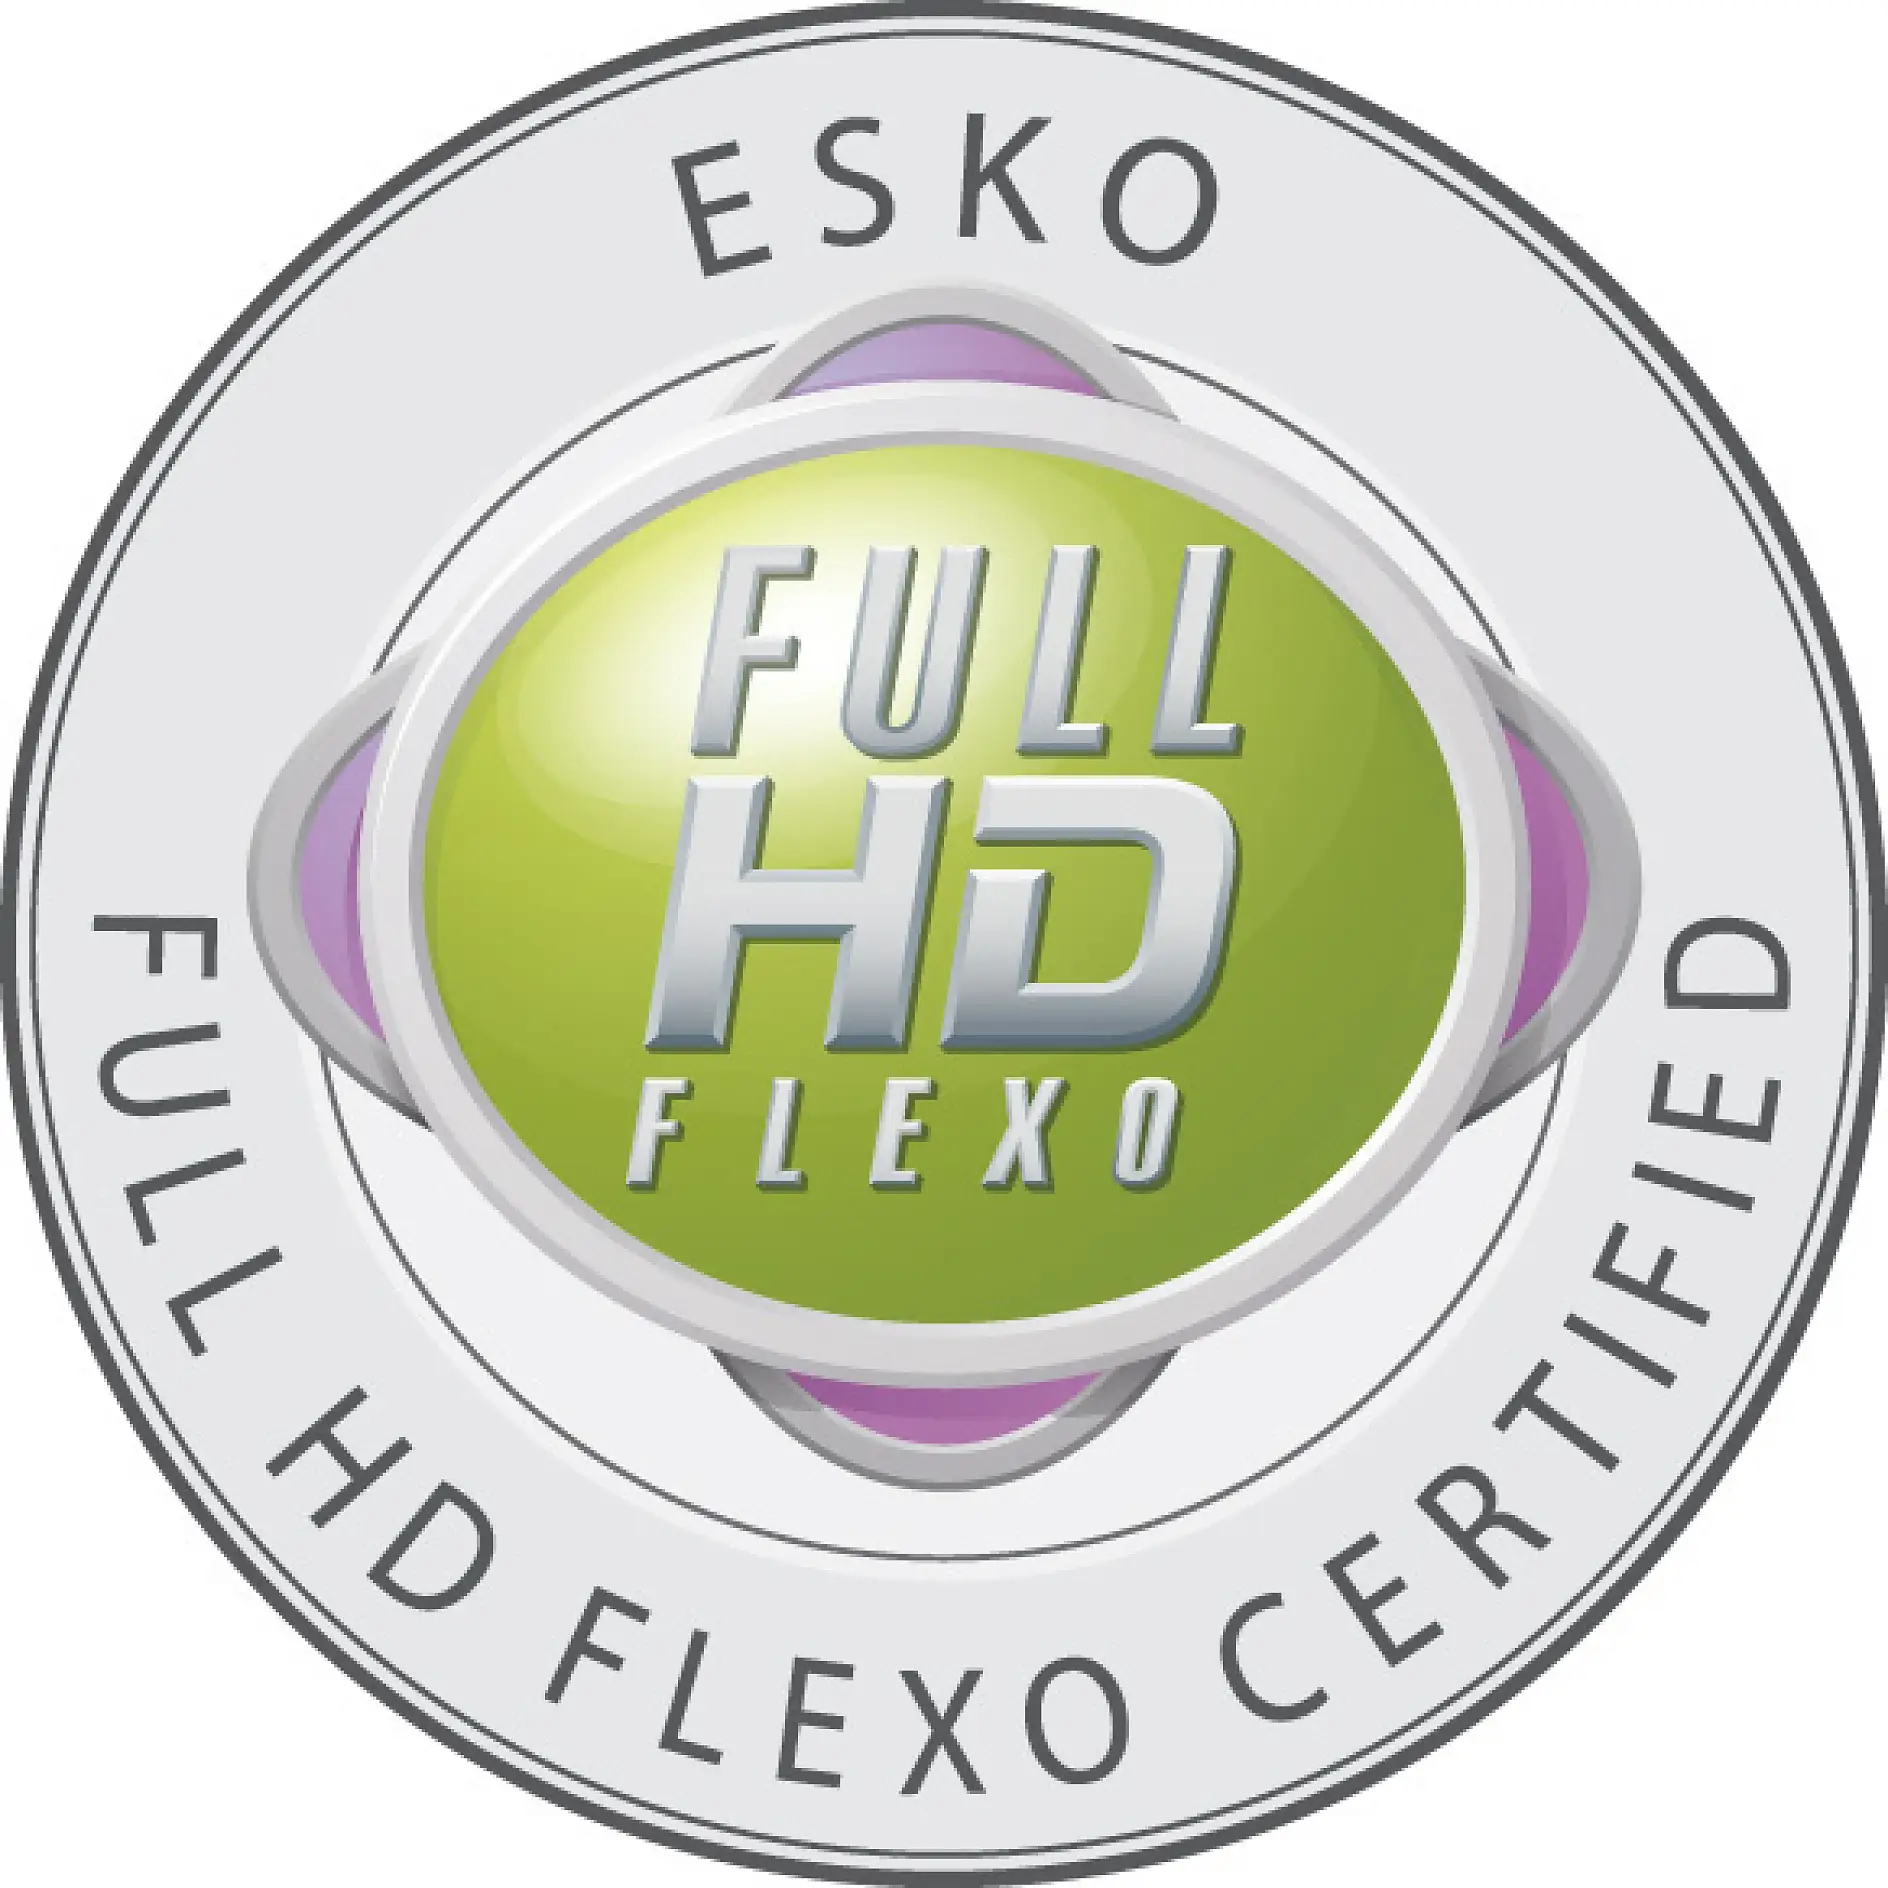 Endast certifierade företag får använda sig av Full HD Flexo-emblemet